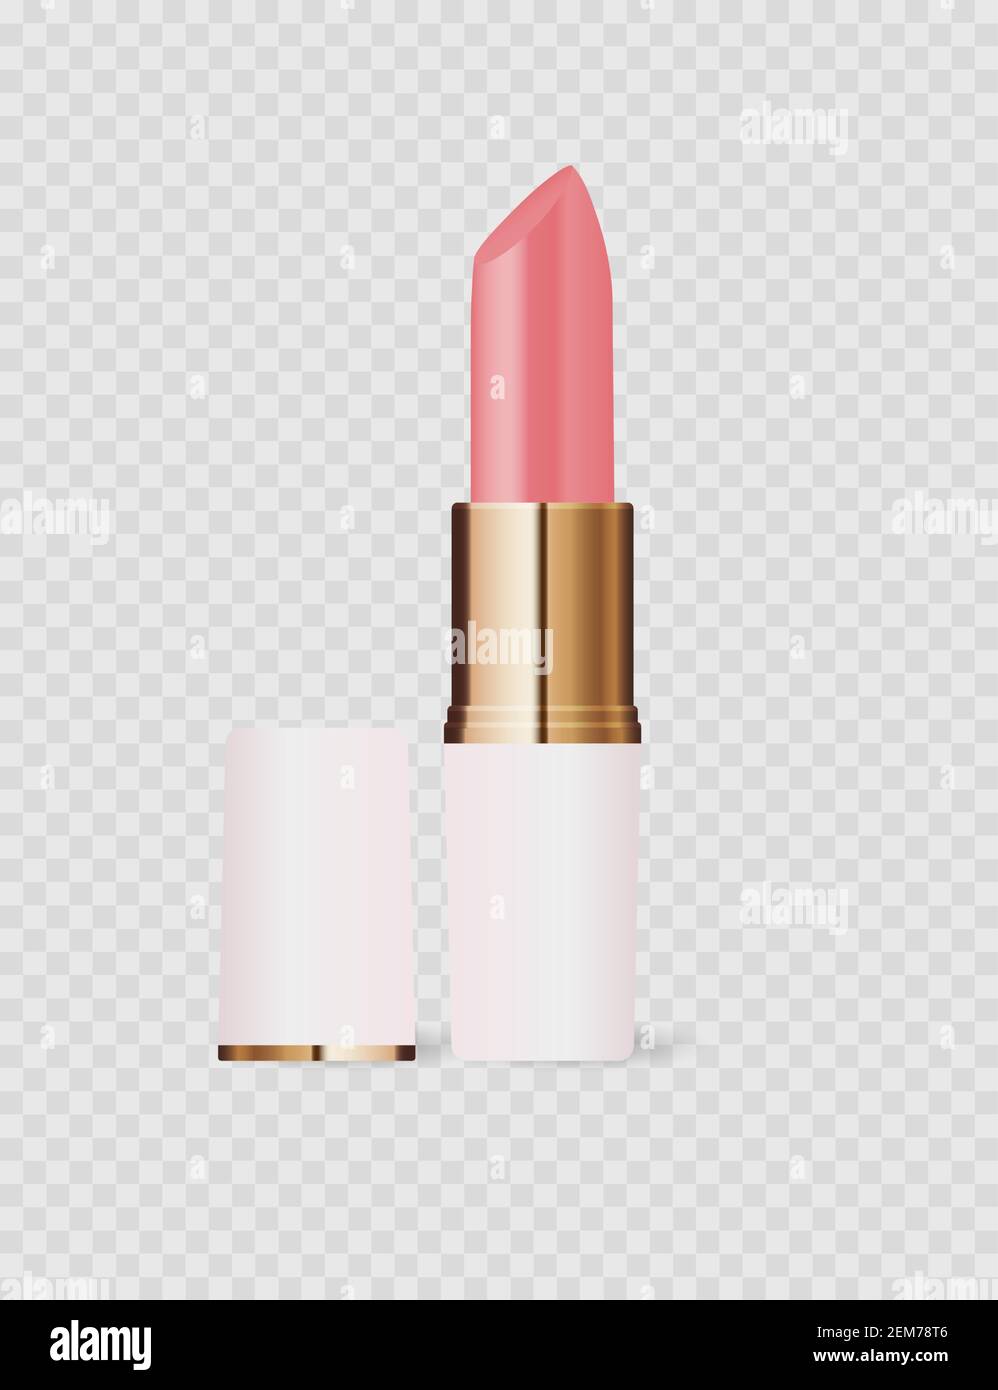 Icona a rossetto rosa chiaro 3D realistica isolata su sfondo trasparente.  Illustrazione vettoriale EPS10 Immagine e Vettoriale - Alamy